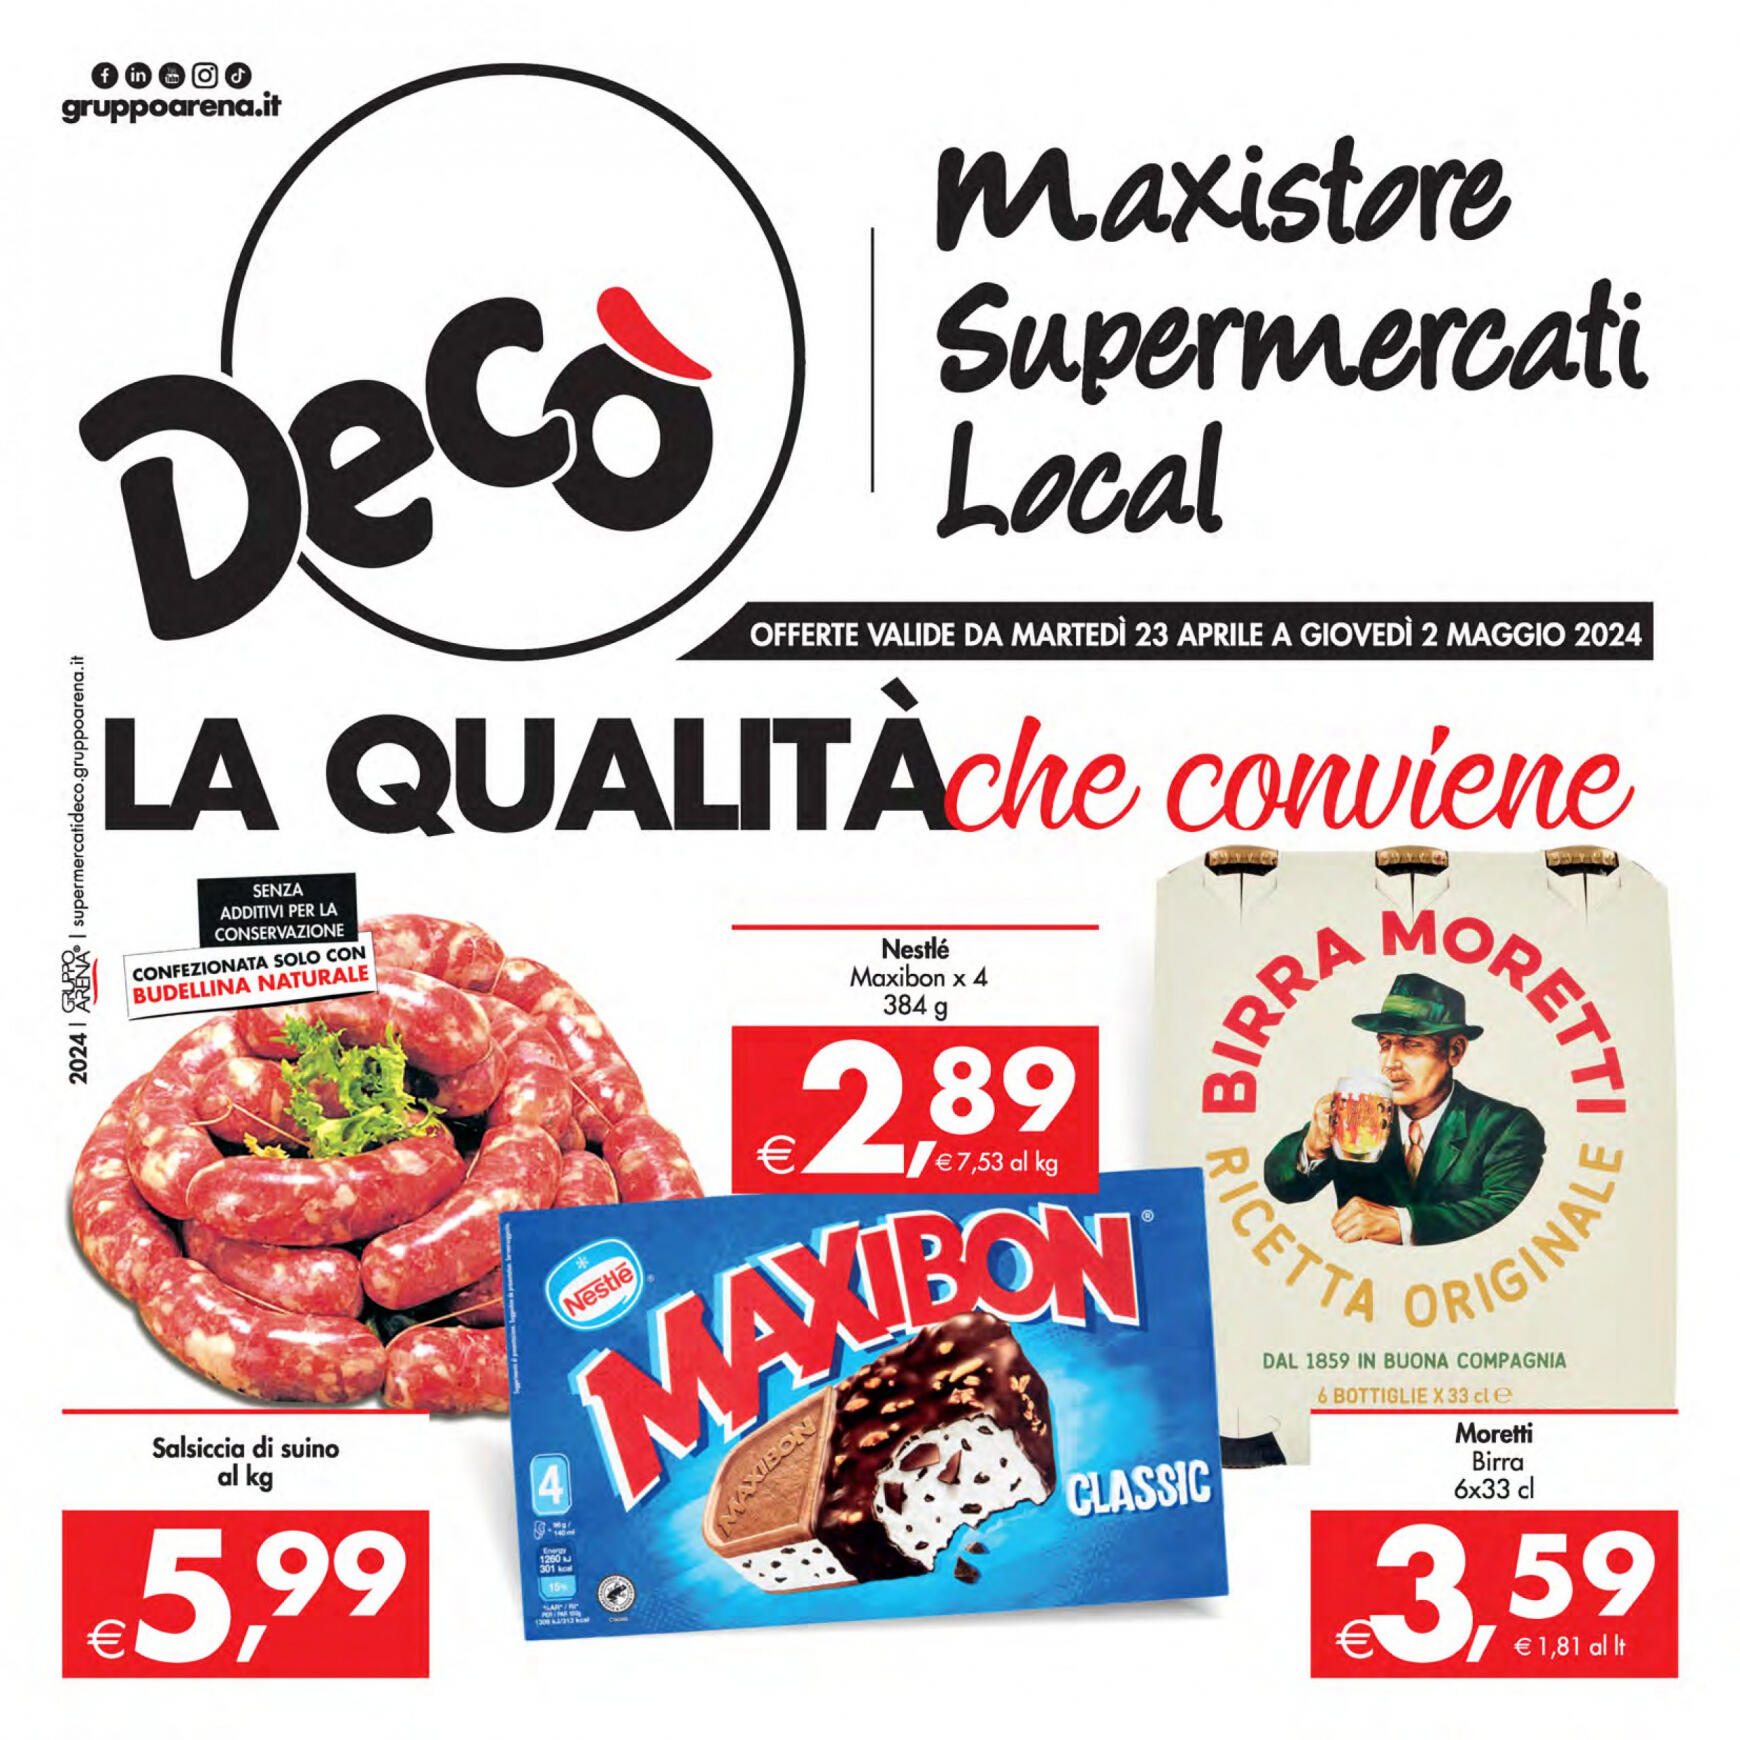 deco - Nuovo volantino Decò - Supermercati/Maxistore/Local 23.04. - 02.05. - page: 1